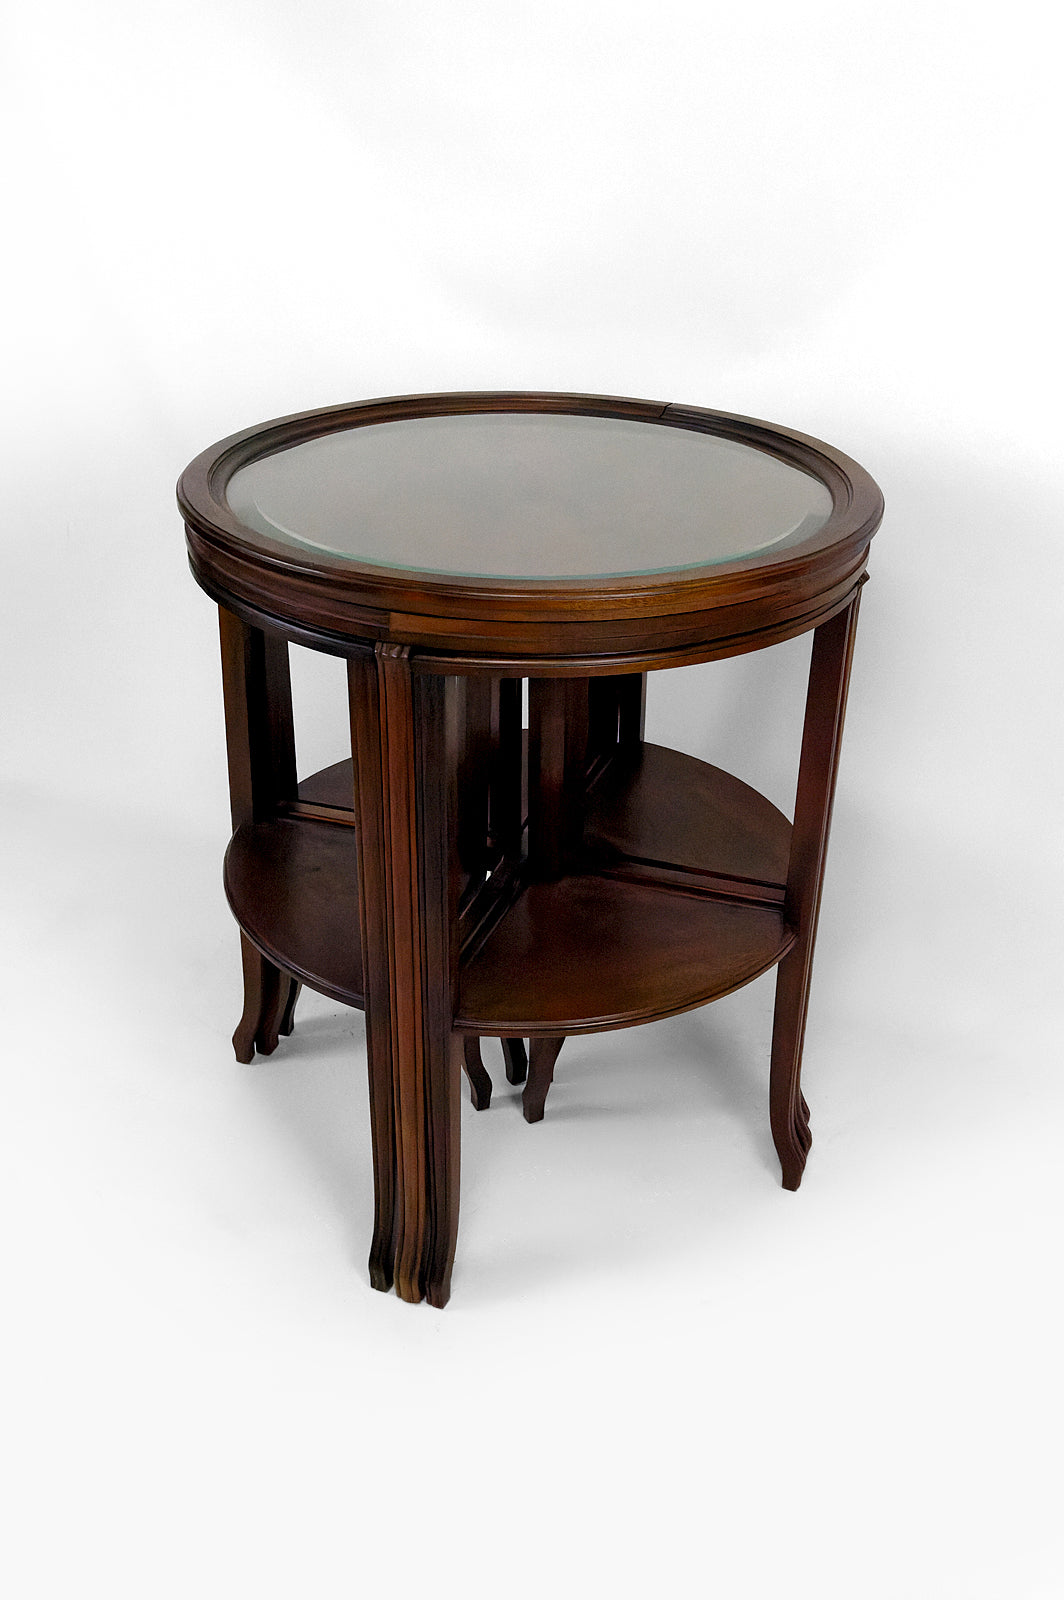 Guéridon / tables gigognes transformable en 2 tables d'appoints, Art Nouveau, France, Attribué à Louis Majorelle, Circa 1910